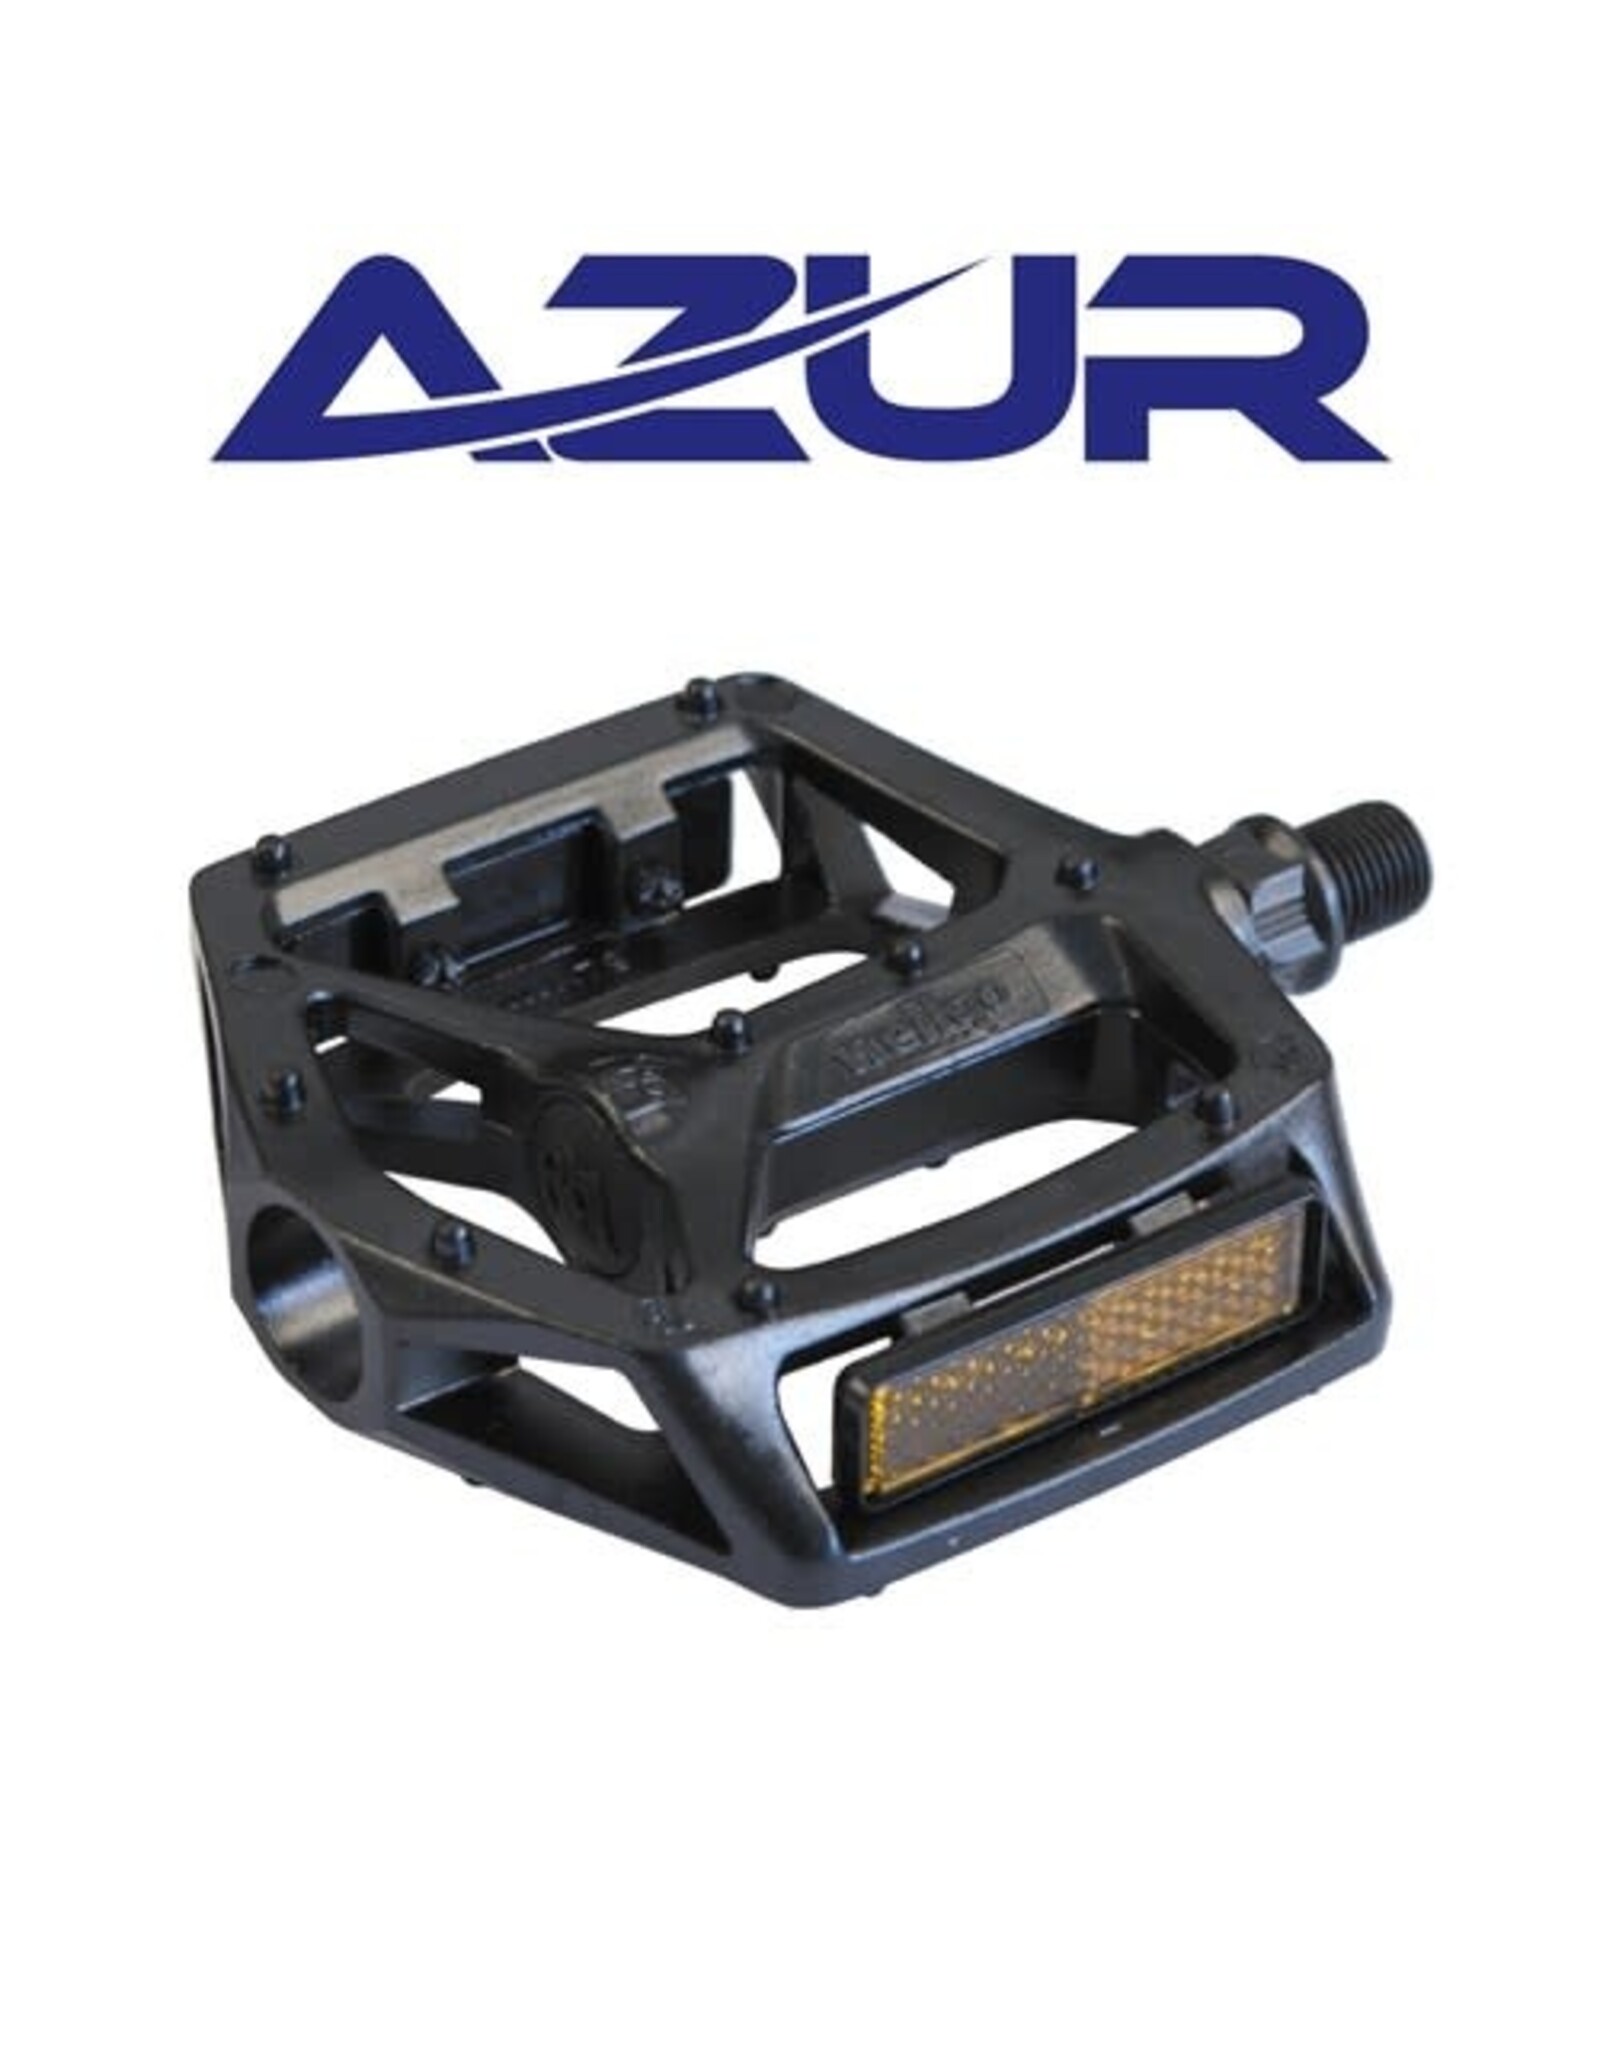 AZUR AZUR PEDALS RAIL BMX ALLOY 9/16” BLACK PLATFORM